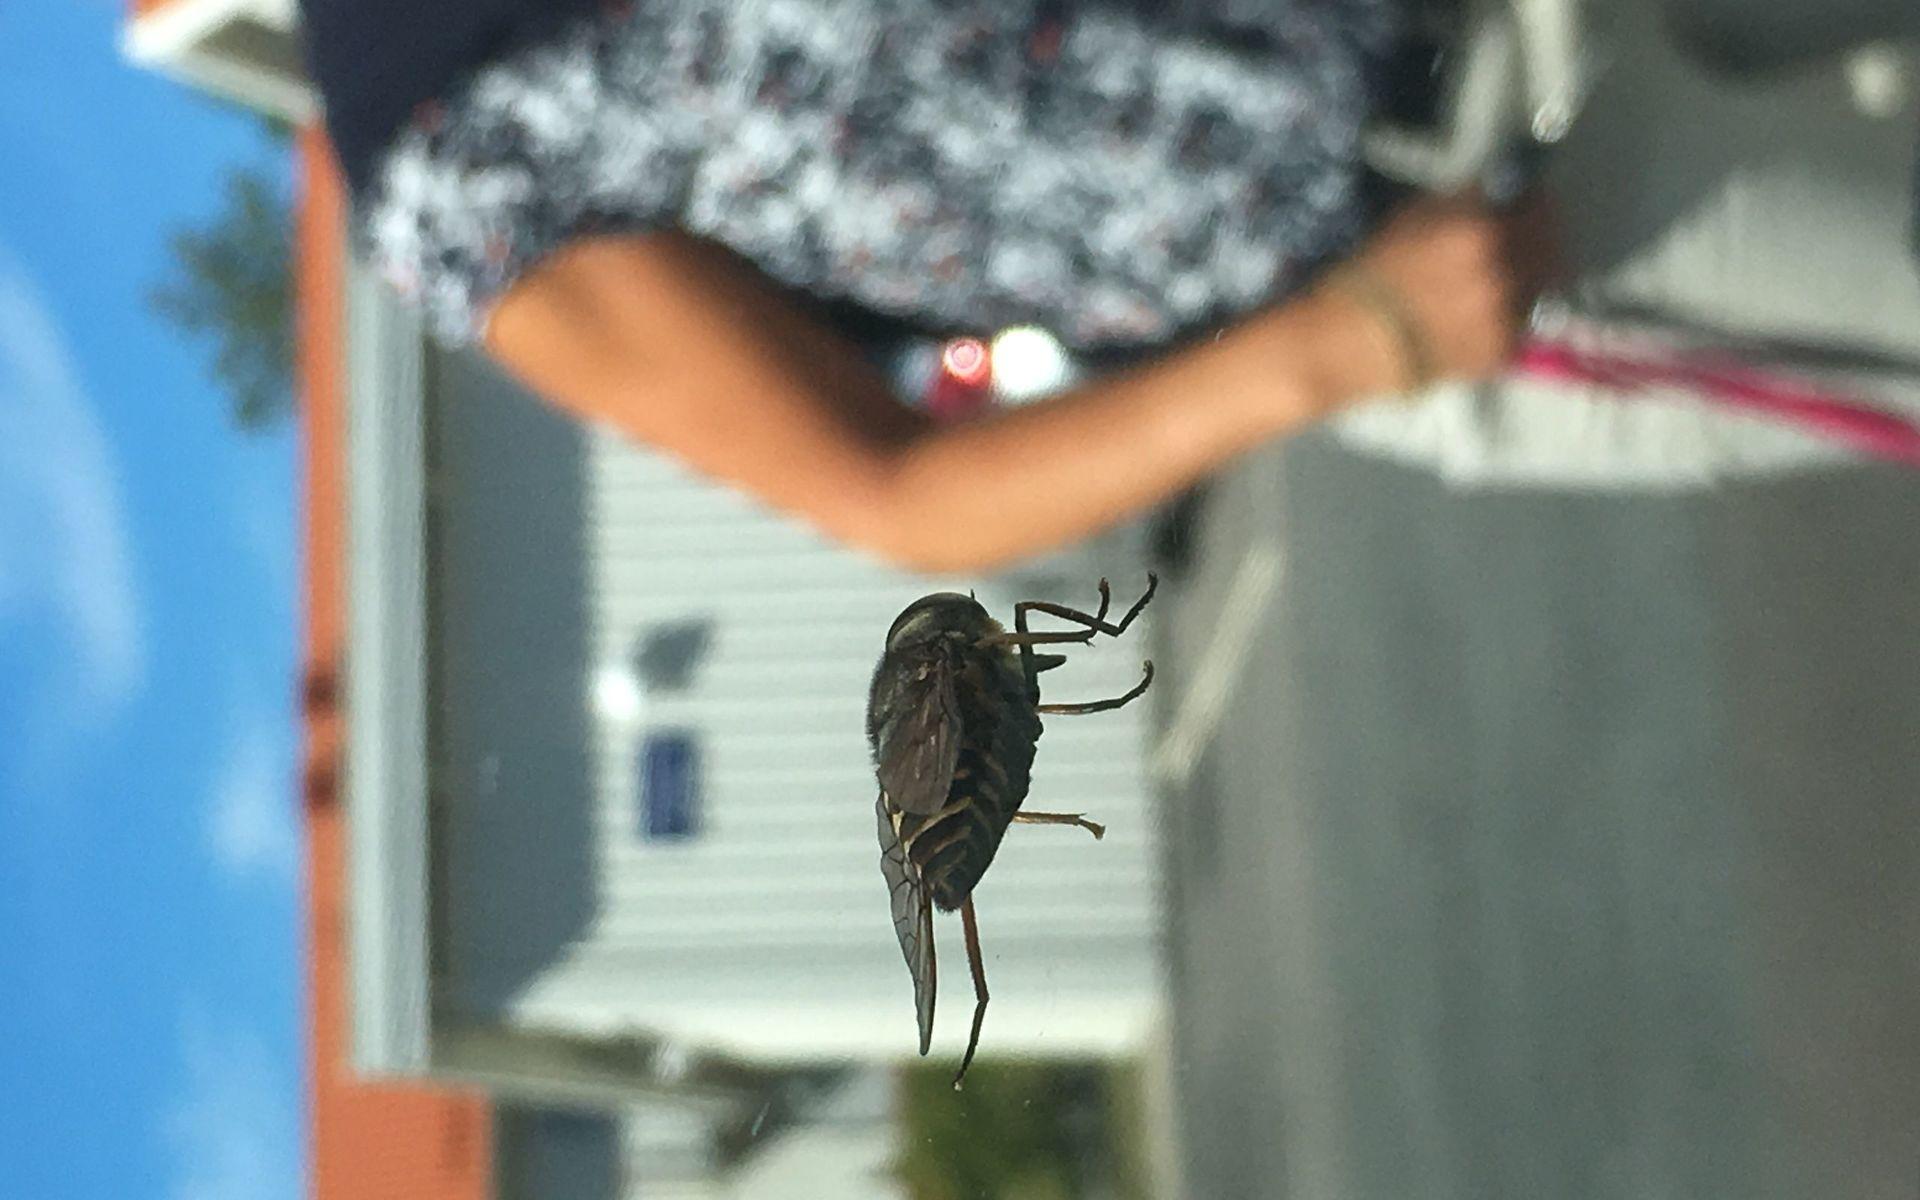 Detta roliga foto tog min dotter på en insekt (okänt vilken) som satt på bilrutan en dag i juli. Jag befinner mig utanför bilen och är med på fotot. Insekten var stor men på fotot ser den ännu större ut i förhållande till mig. 